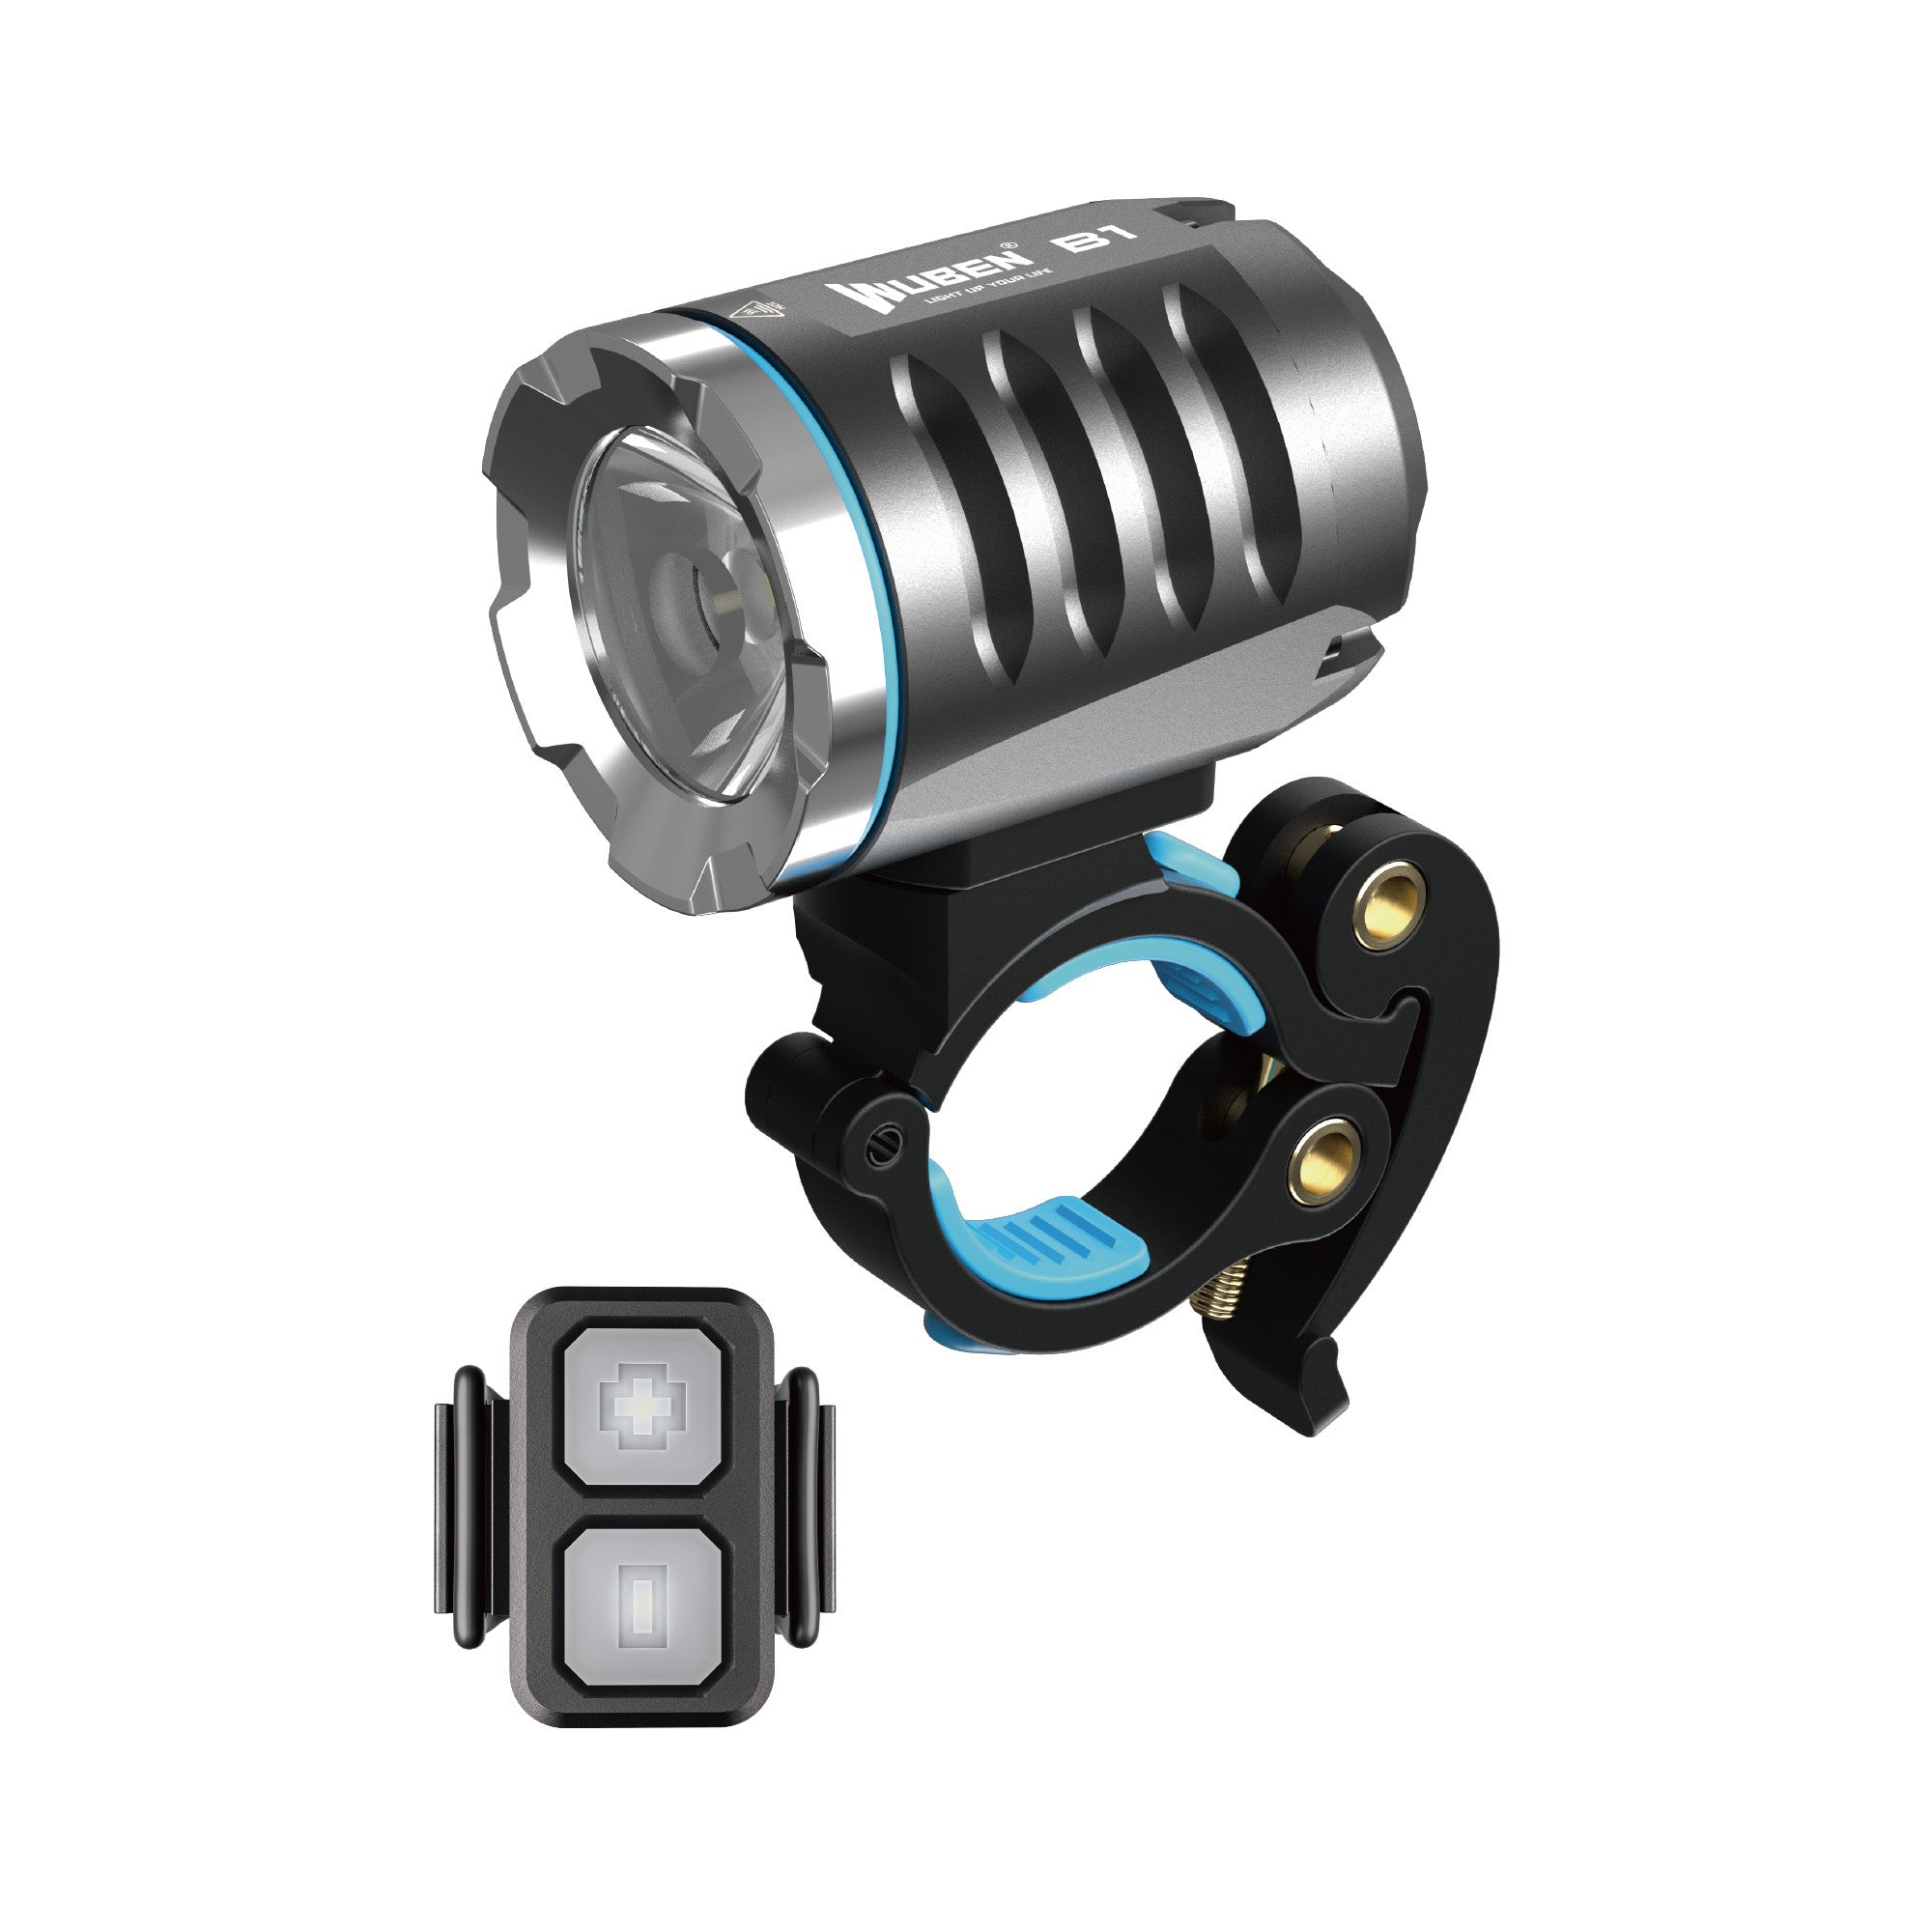 overskud kollektion indre B1 Remote Control Bike Light - Wuben Flashlight